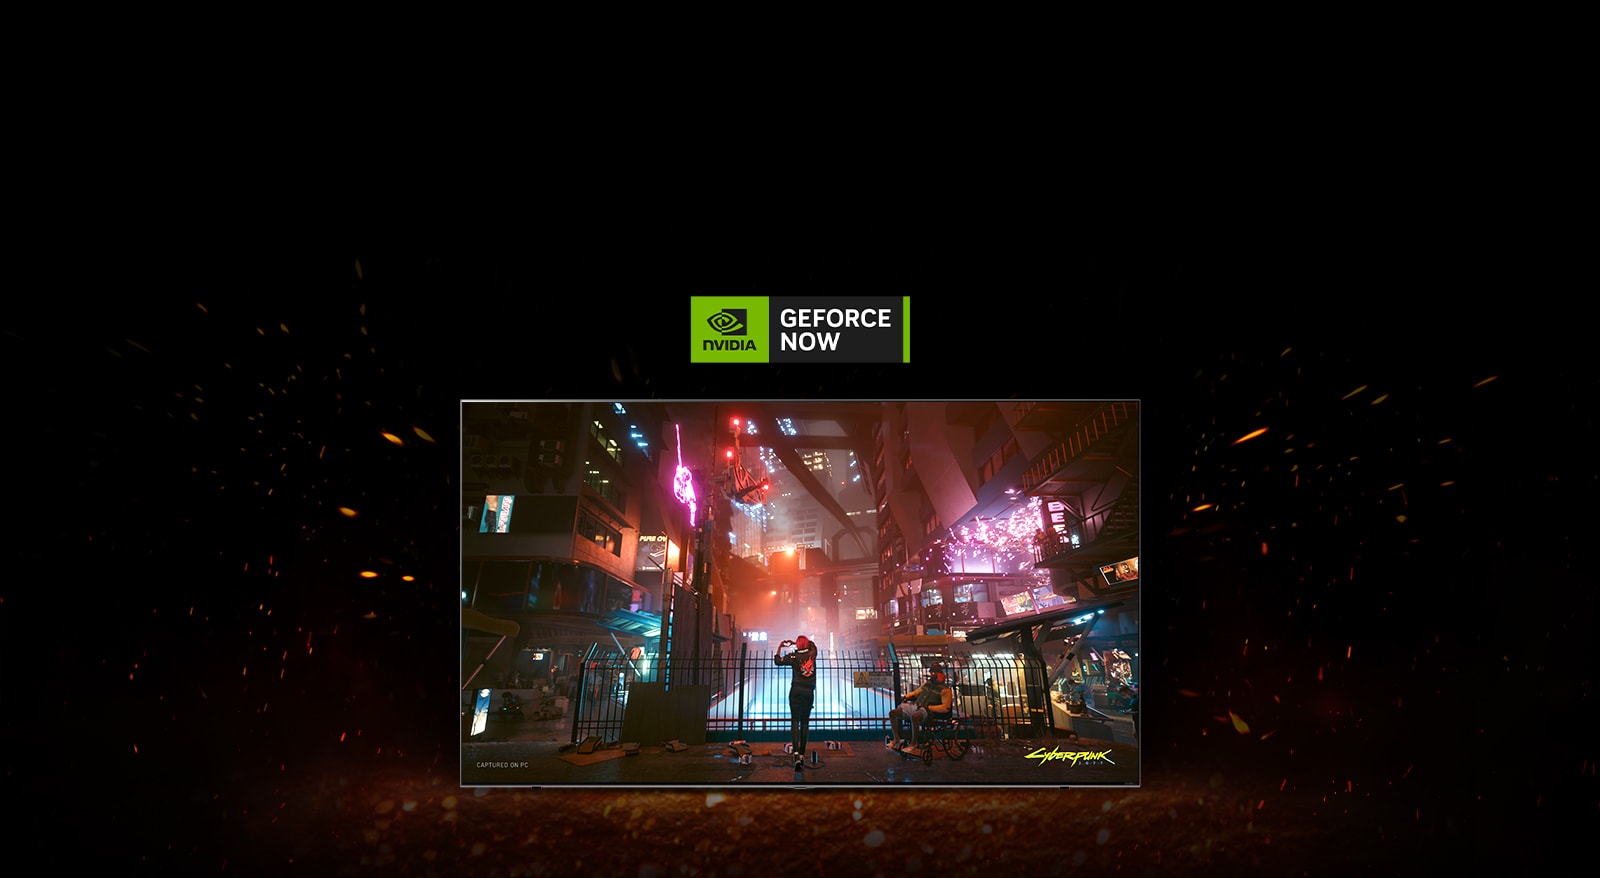 Des flammes jaillissent autour du téléviseur et on peut voir l’écran du jeu Cyberpunk. Un logo GeForce NOW se trouve en haut du téléviseur.